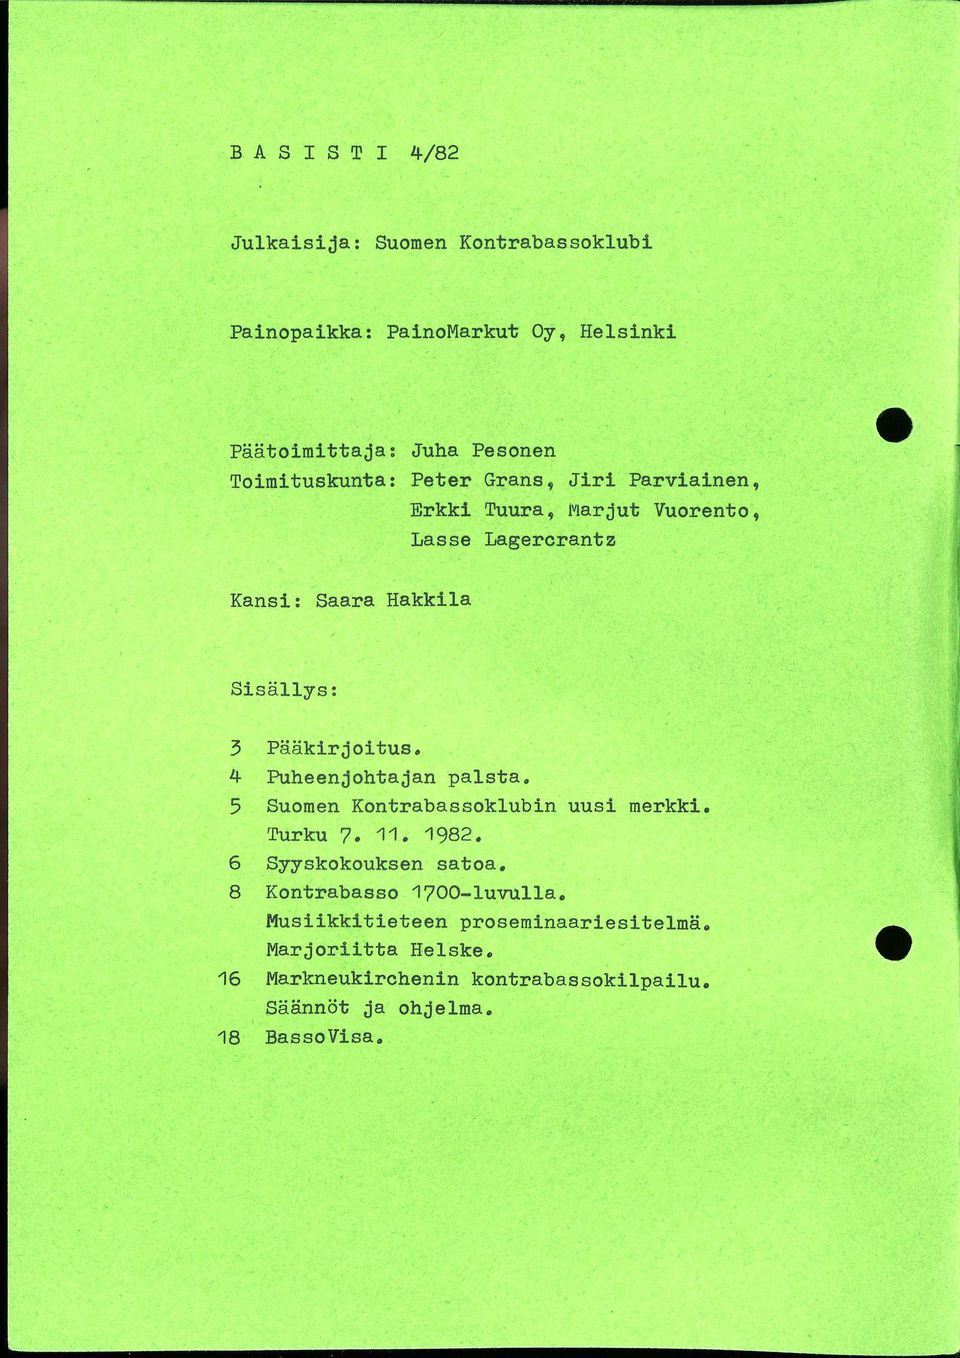 4 Puheenjohtajan palsta. 5 Suomen Kontrabassoklubin uusi merkki. Turku 7. 11. 1982. 6 Syyskokouksen satoa.